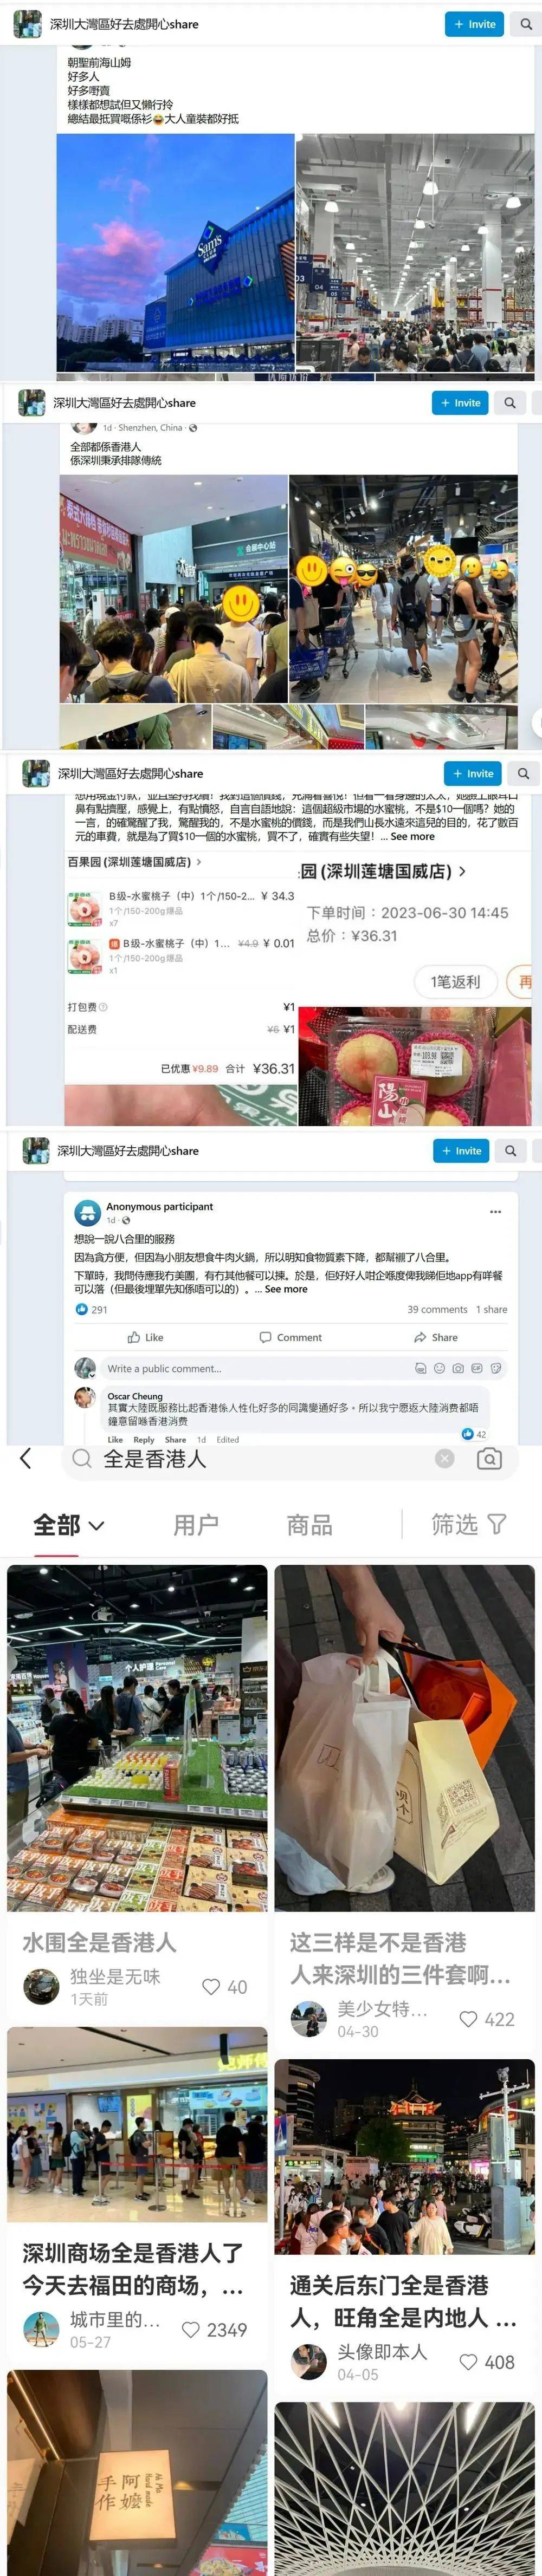 “香港赚钱深圳花”，反向代购怎么火了？